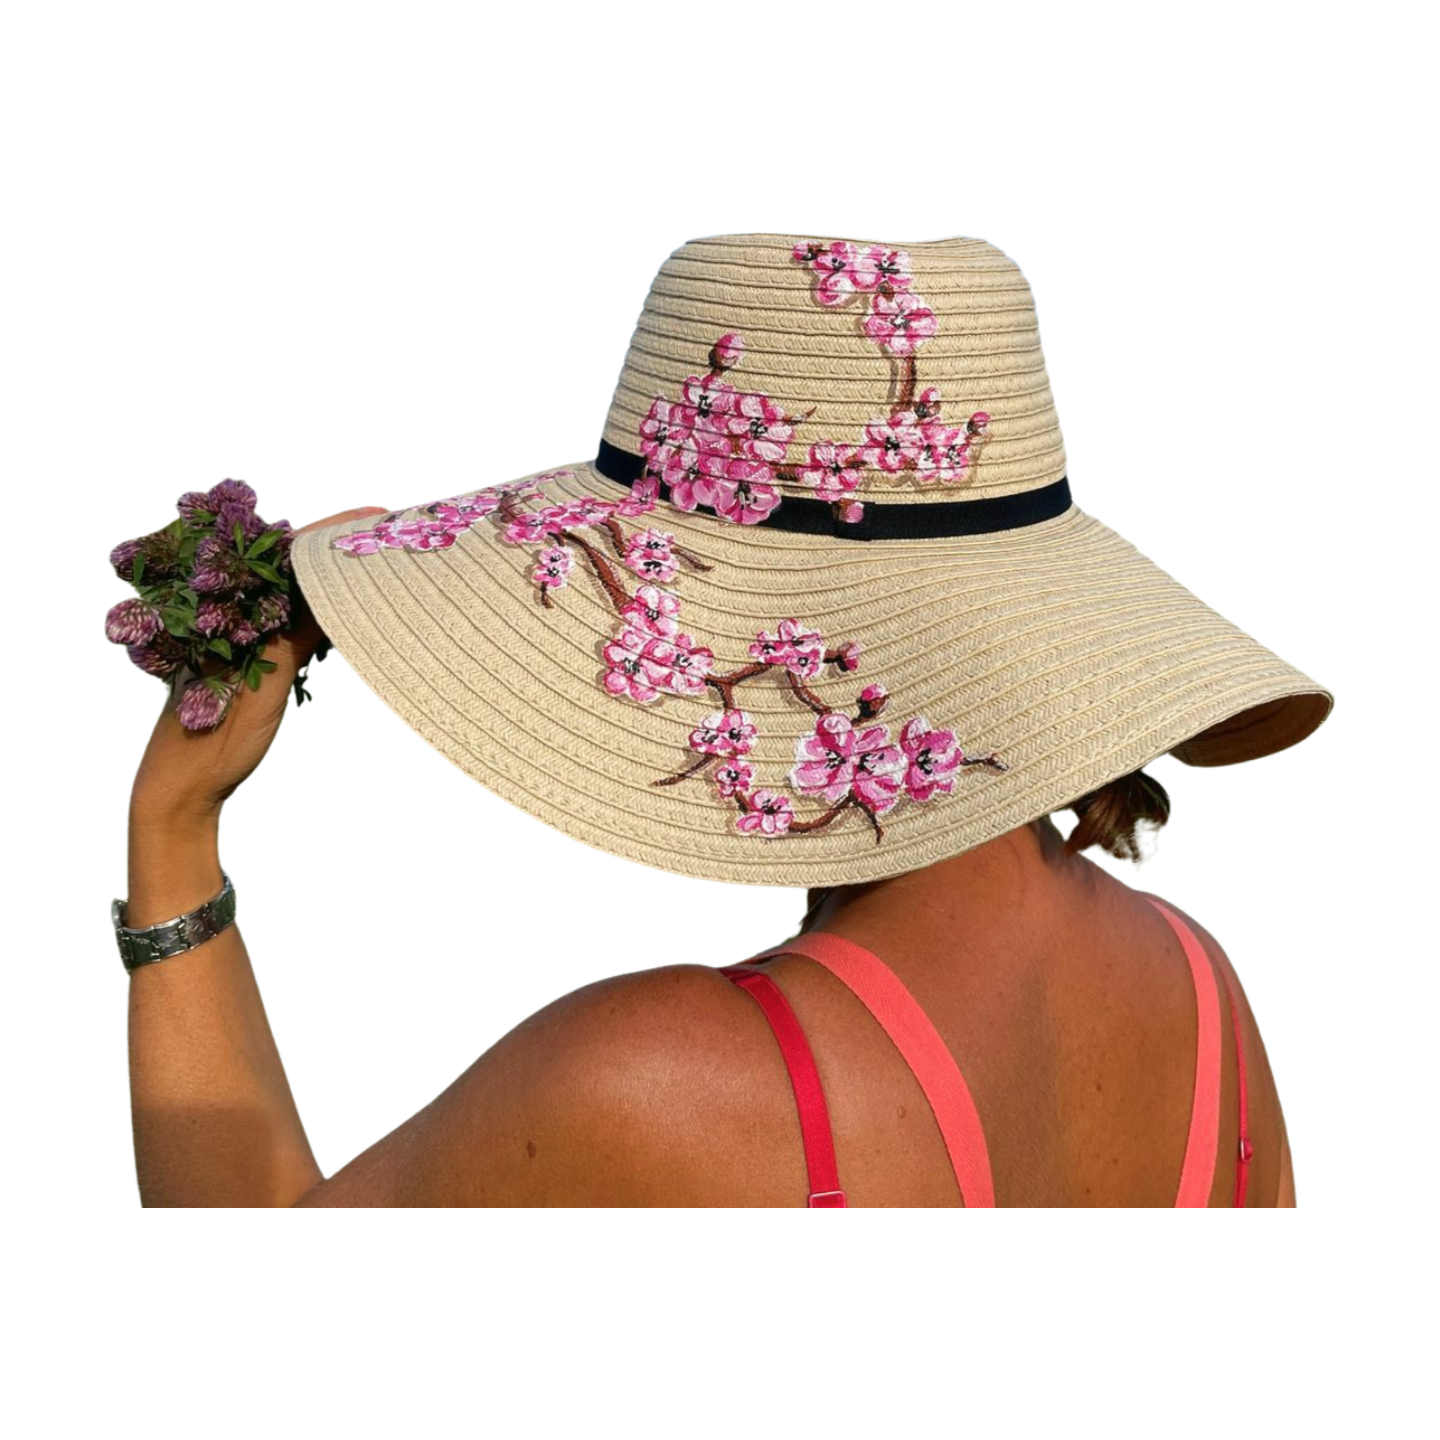 Chapeau femme papier tissé avec fleurs de cerisier peintes à la main